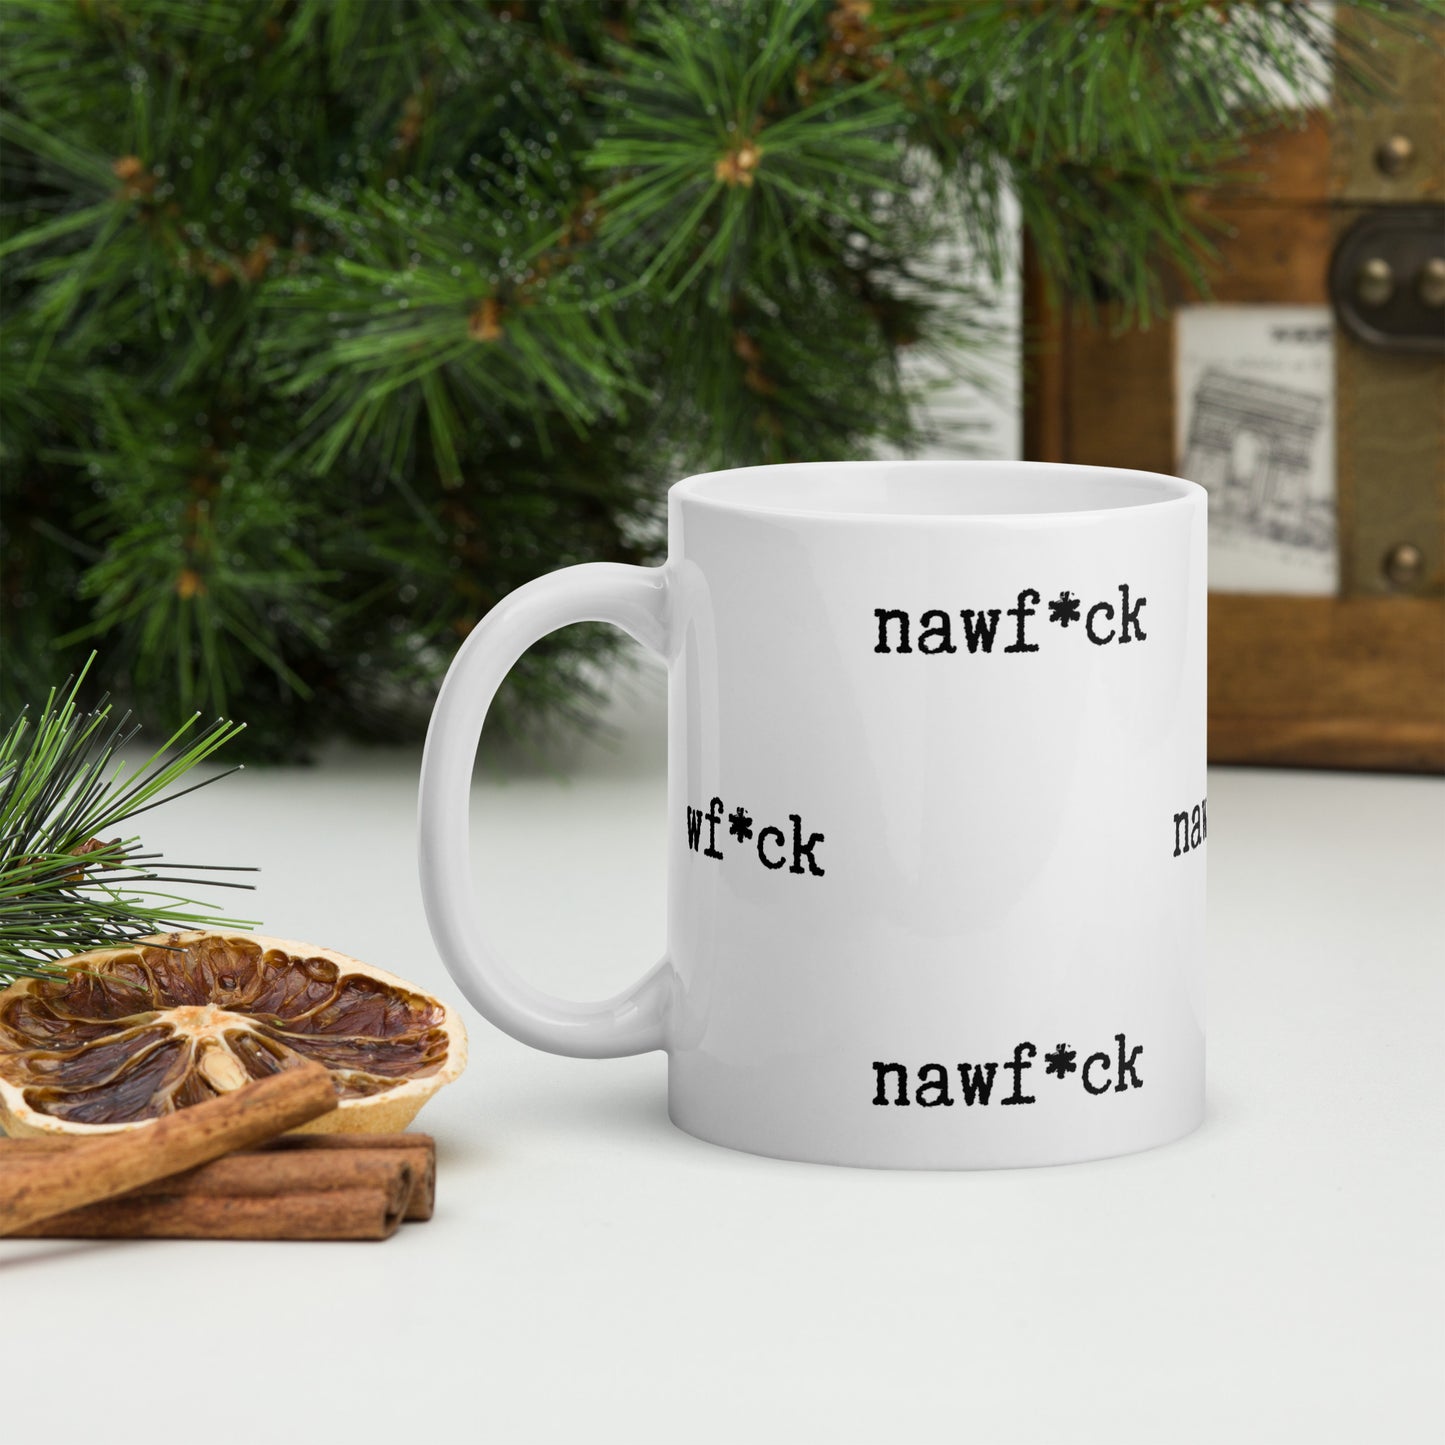 "Nawf*ck" white glossy mug